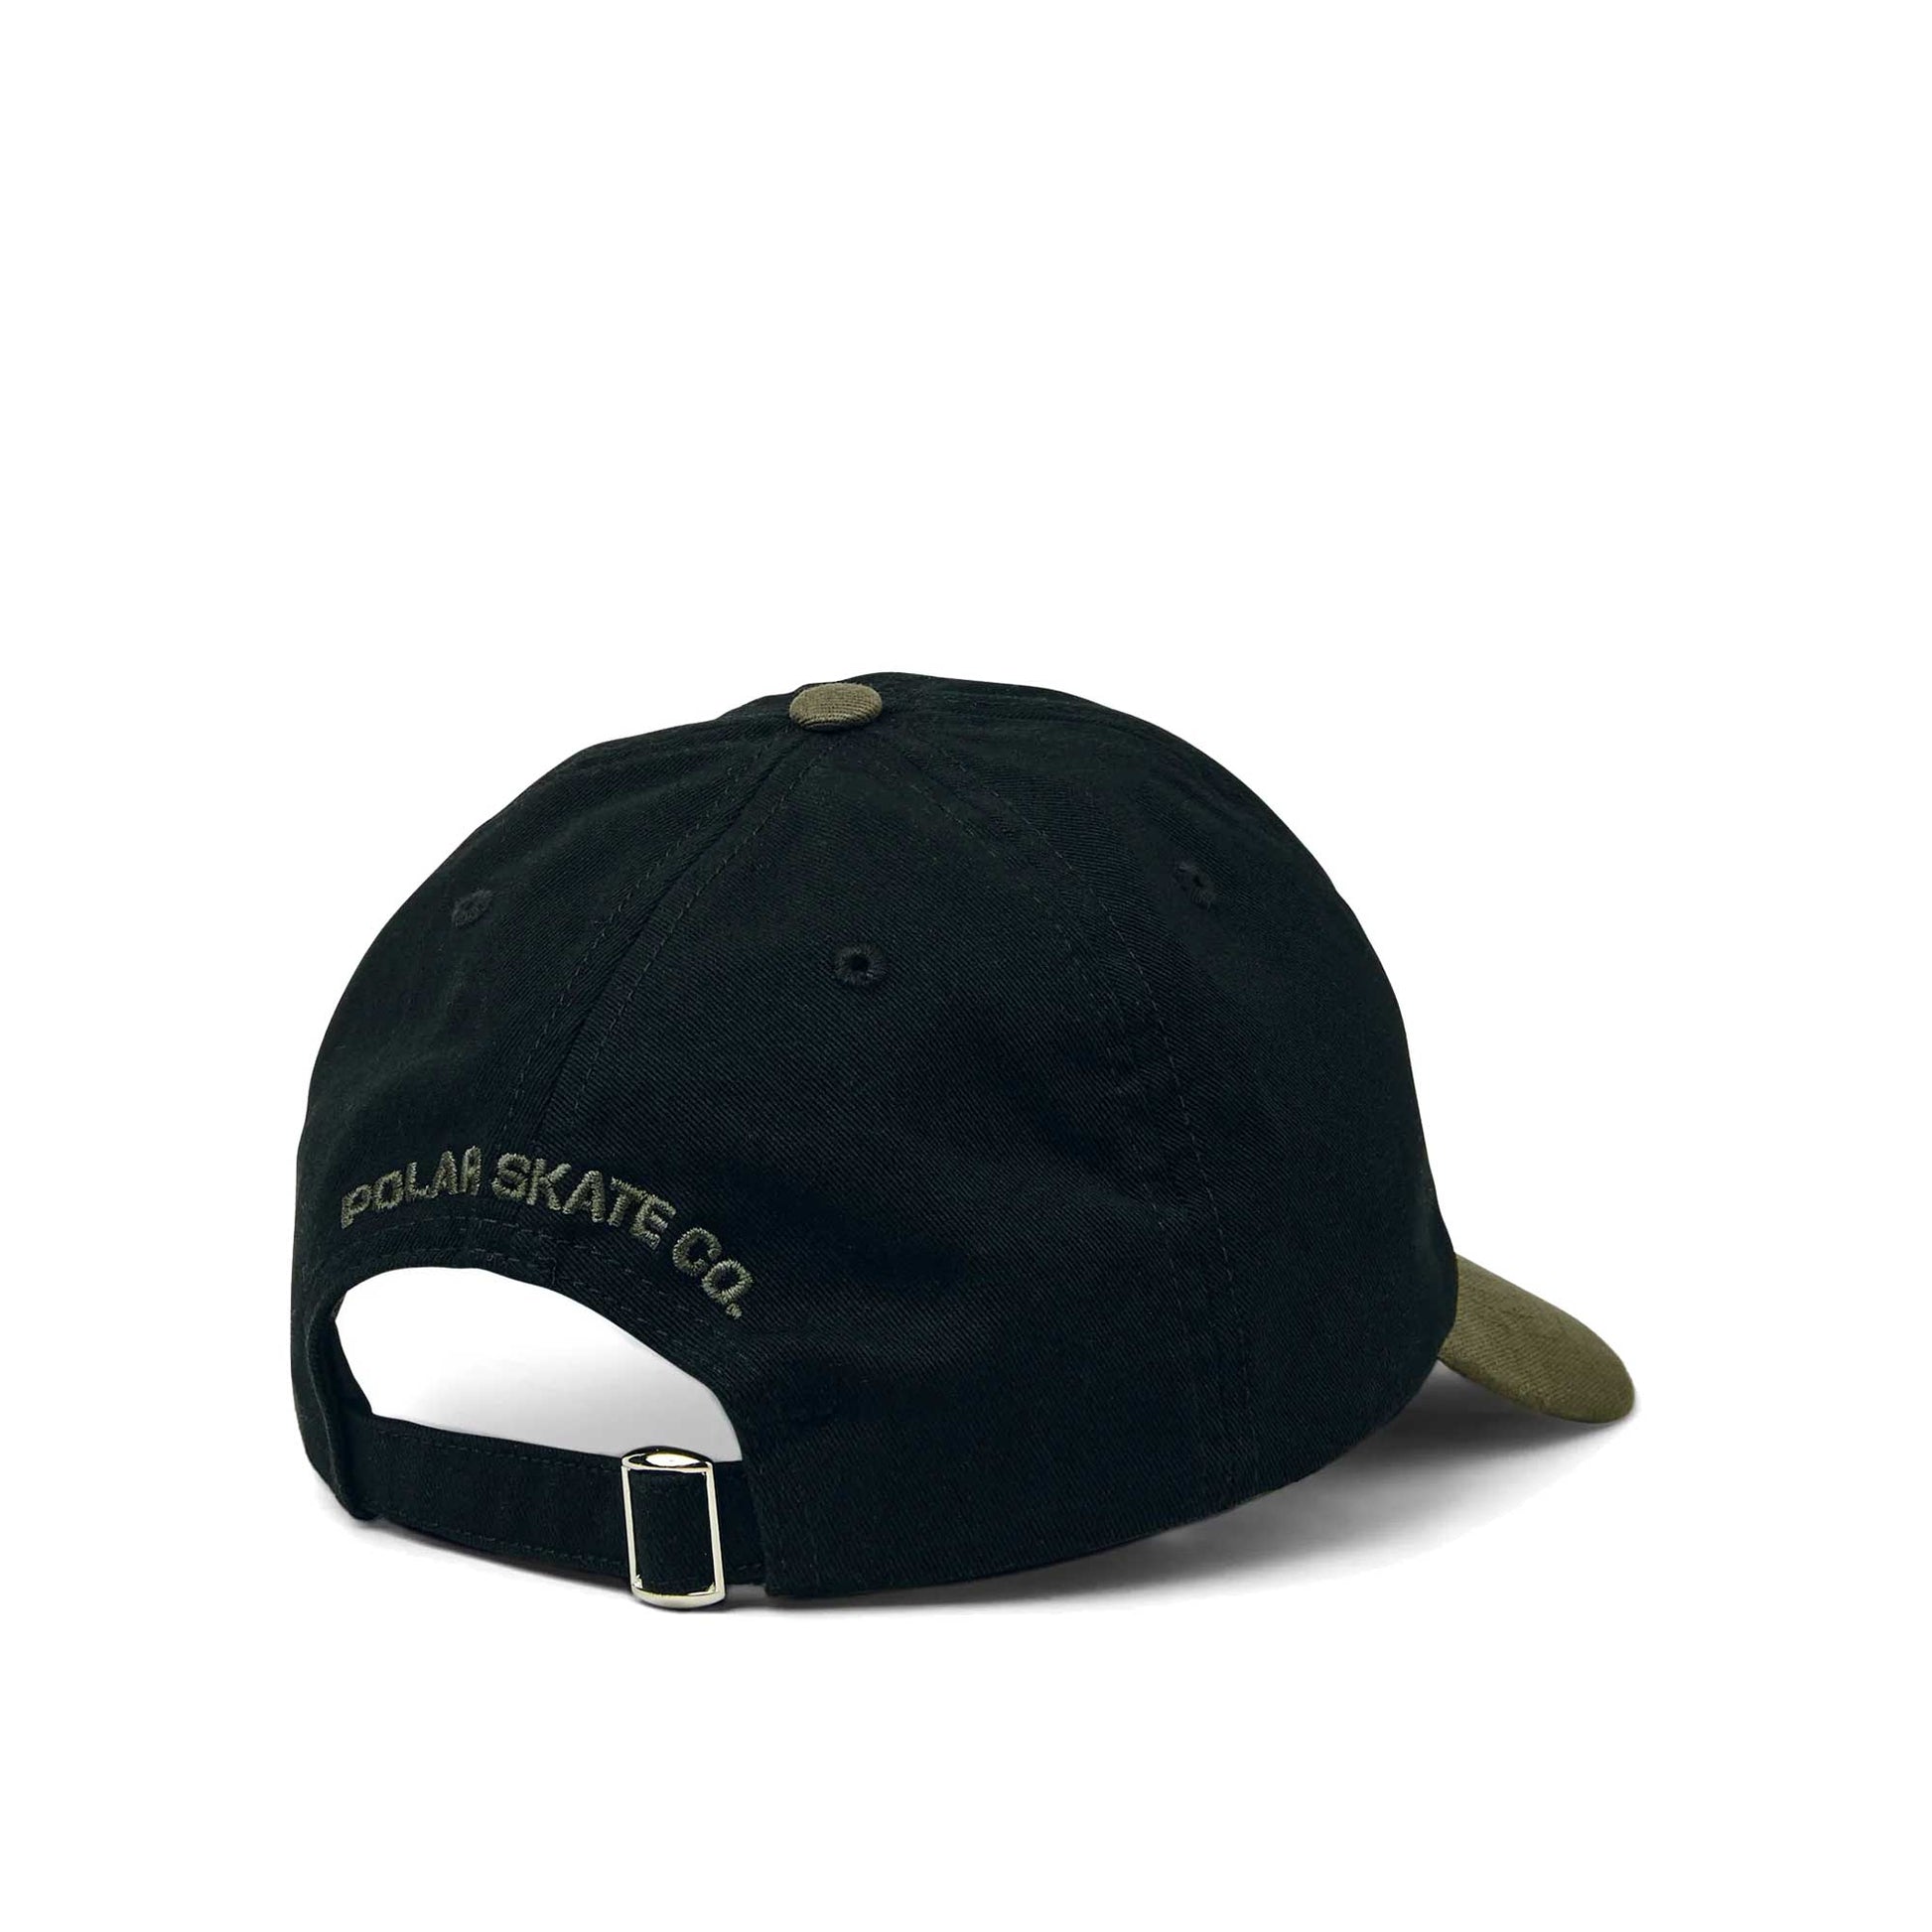 Polar Duo Stroke Logo Cap, black/army green - Tiki Room Skateboards - 2